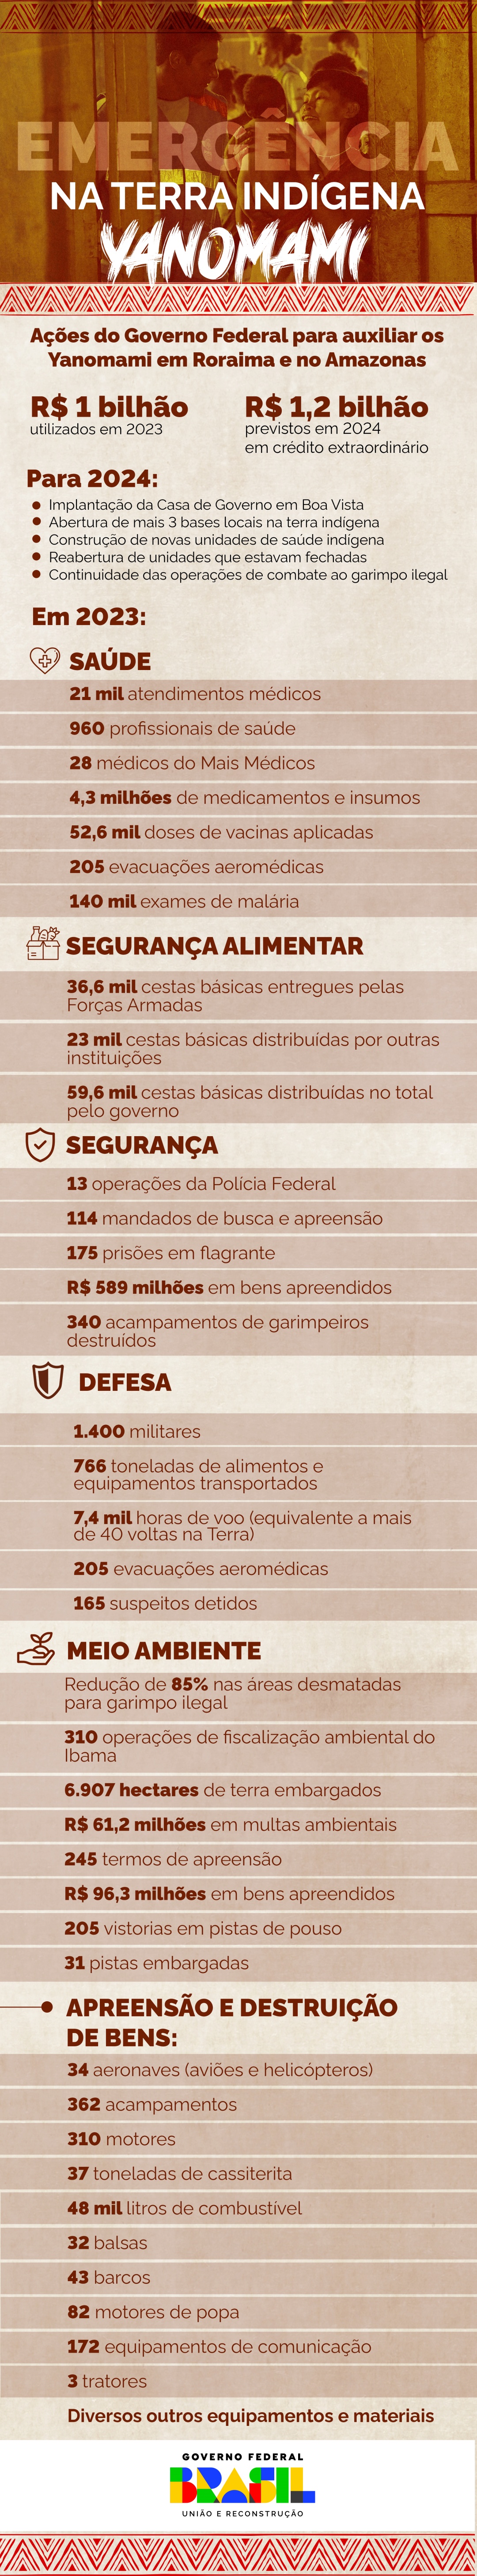 Principais números da ação do Governo Federal no território Yanomami em Roraima